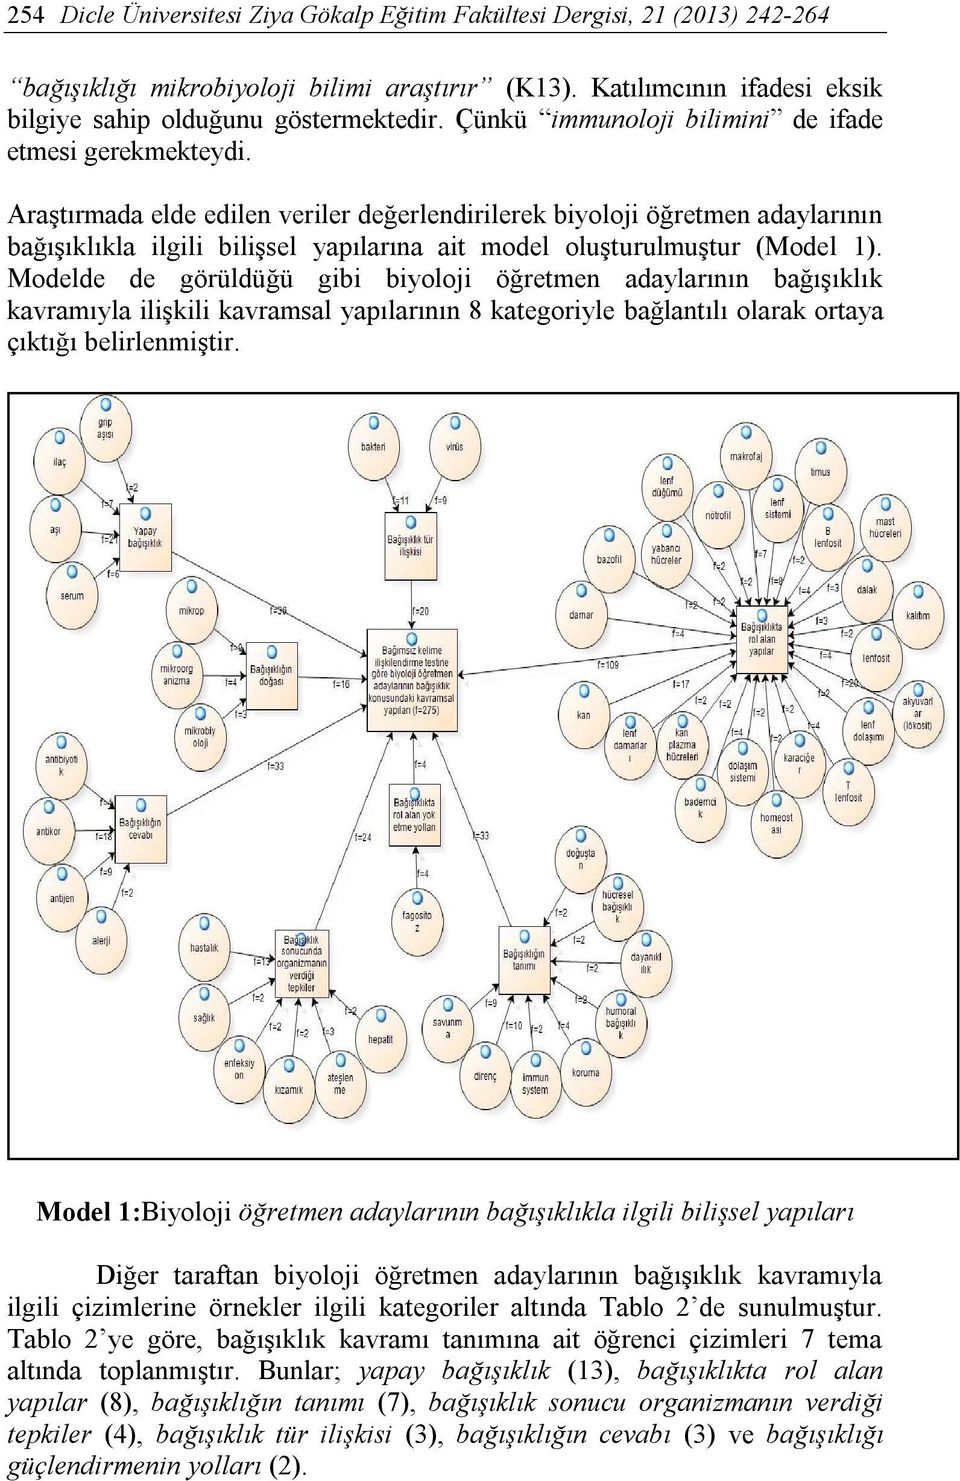 Modelde de görüldüğü gibi biyoloji öğretmen adaylarının bağışıklık kavramıyla ilişkili kavramsal yapılarının 8 kategoriyle bağlantılı olarak ortaya çıktığı belirlenmiştir.